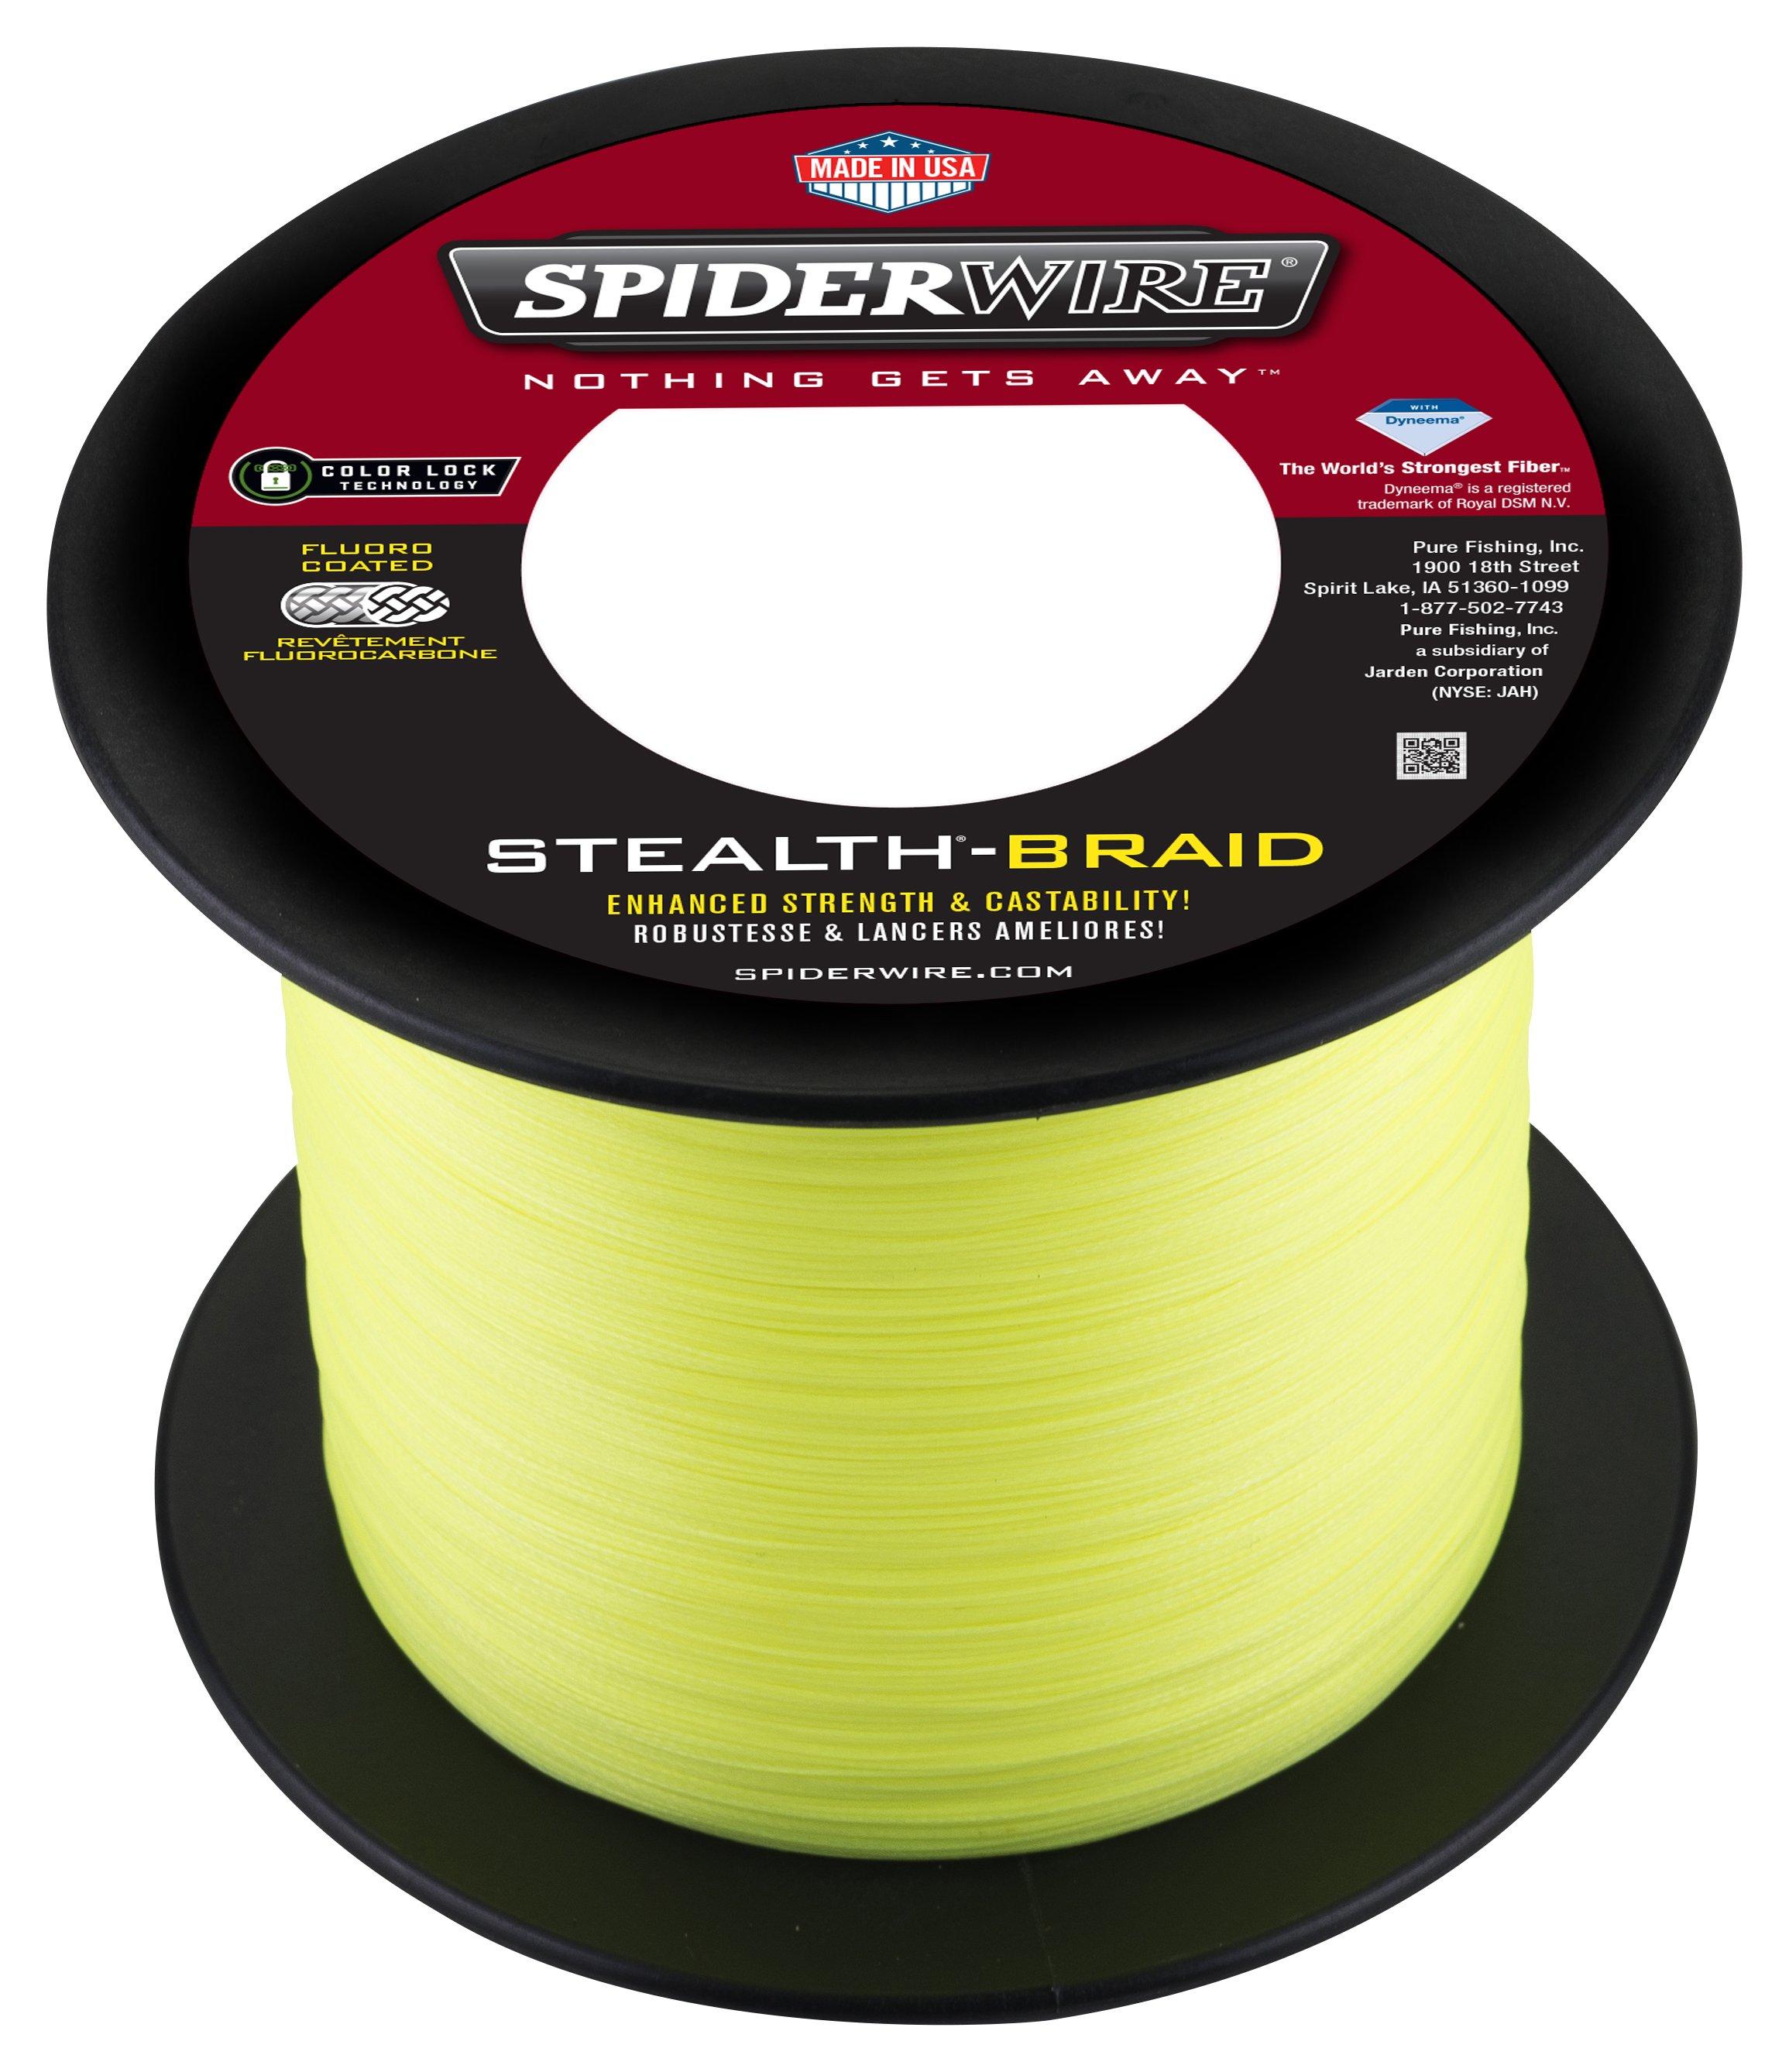 SPIDERWIRE SPIDERWIRE Stealth Smooth 8 strand braided fishing line 150  1515647 00, spiderwire stealth braid